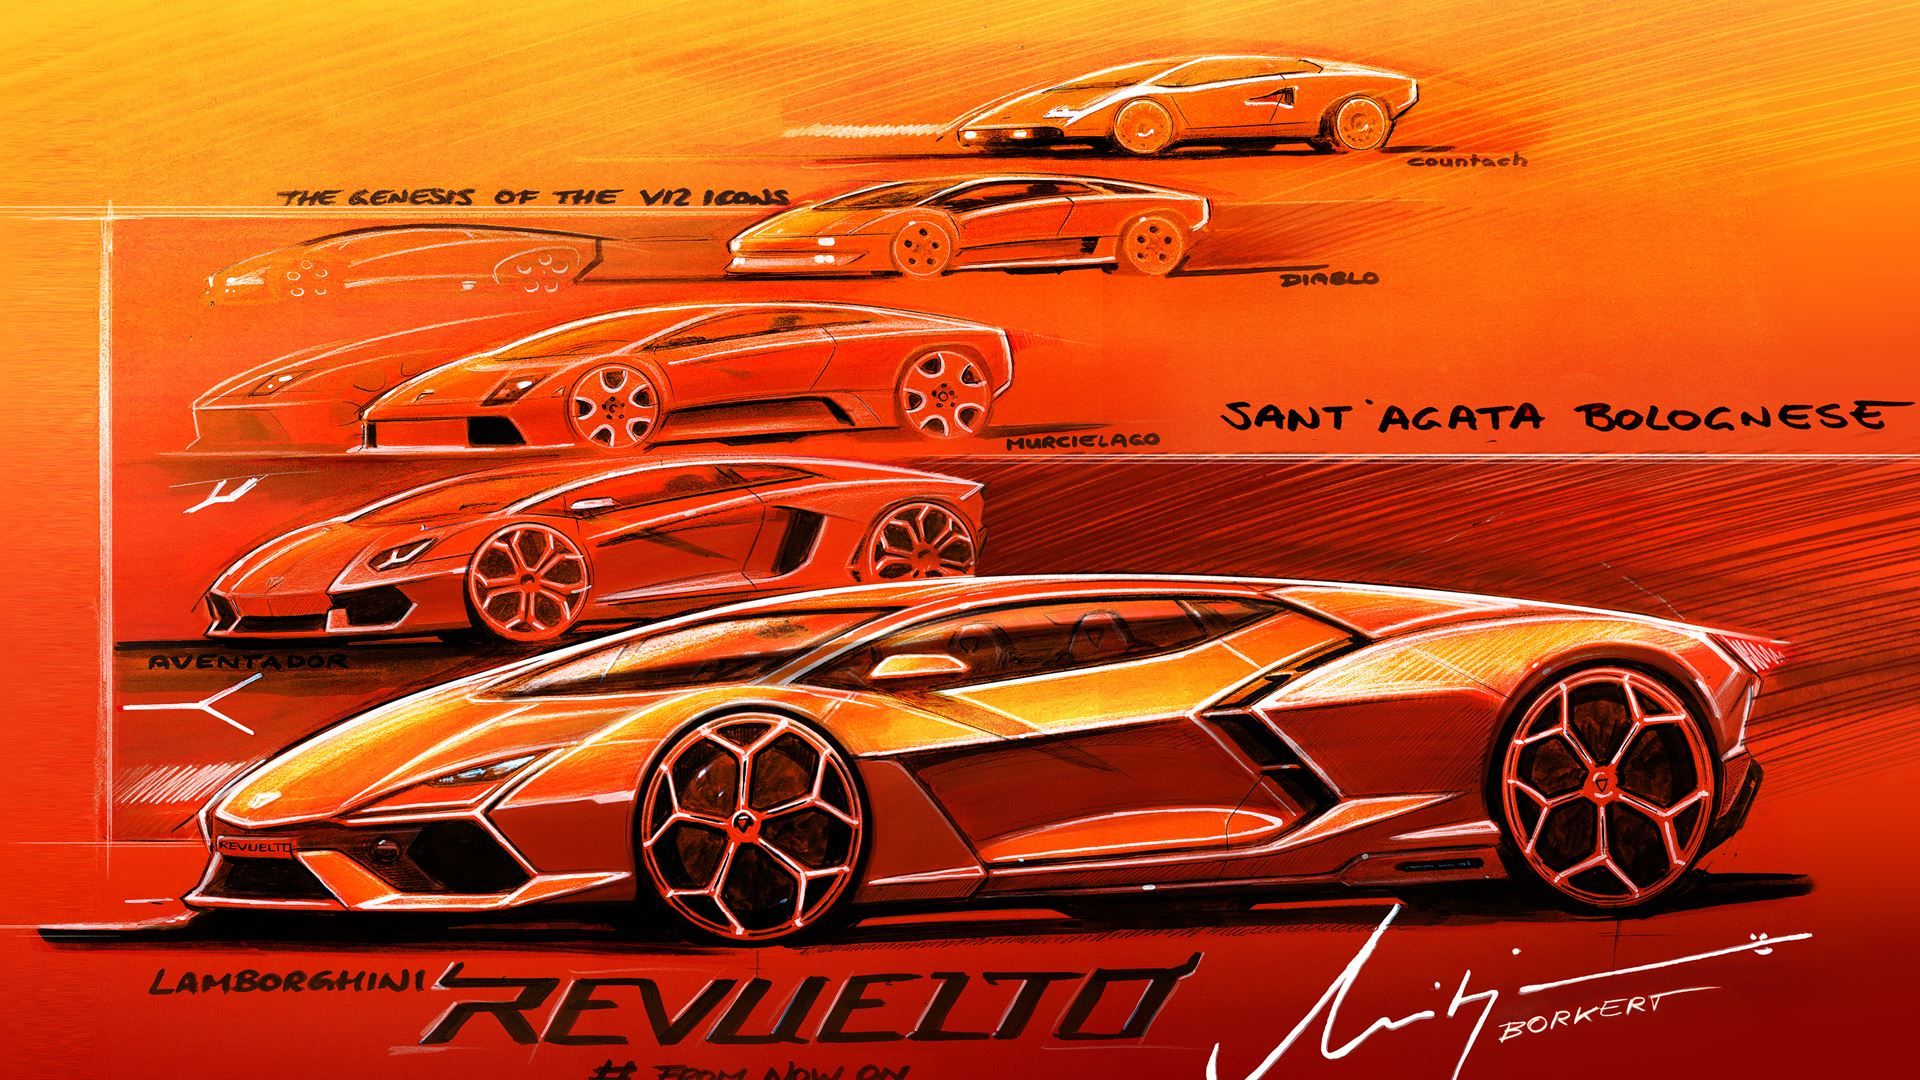 Lamborghini Revuelto. For a V that and more